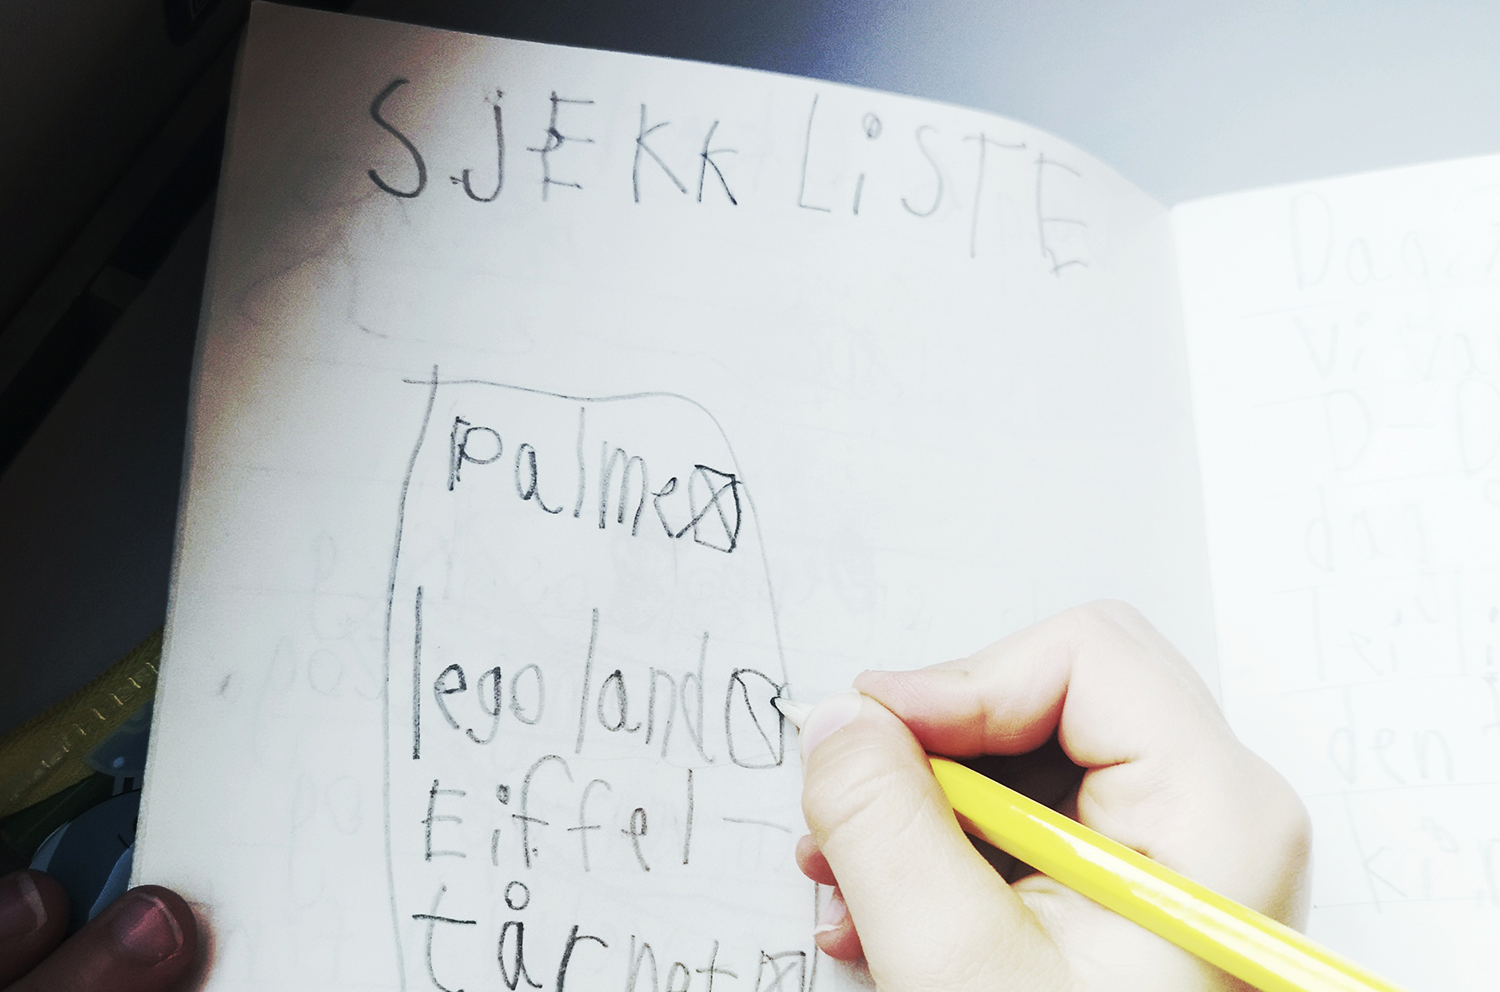 En kladdebok der et barns hånd skriver en sjekkliste over ting som skal oppleves på turen. Sjekklisten inneholder palmer, lego-land og eiffel-tårnet.